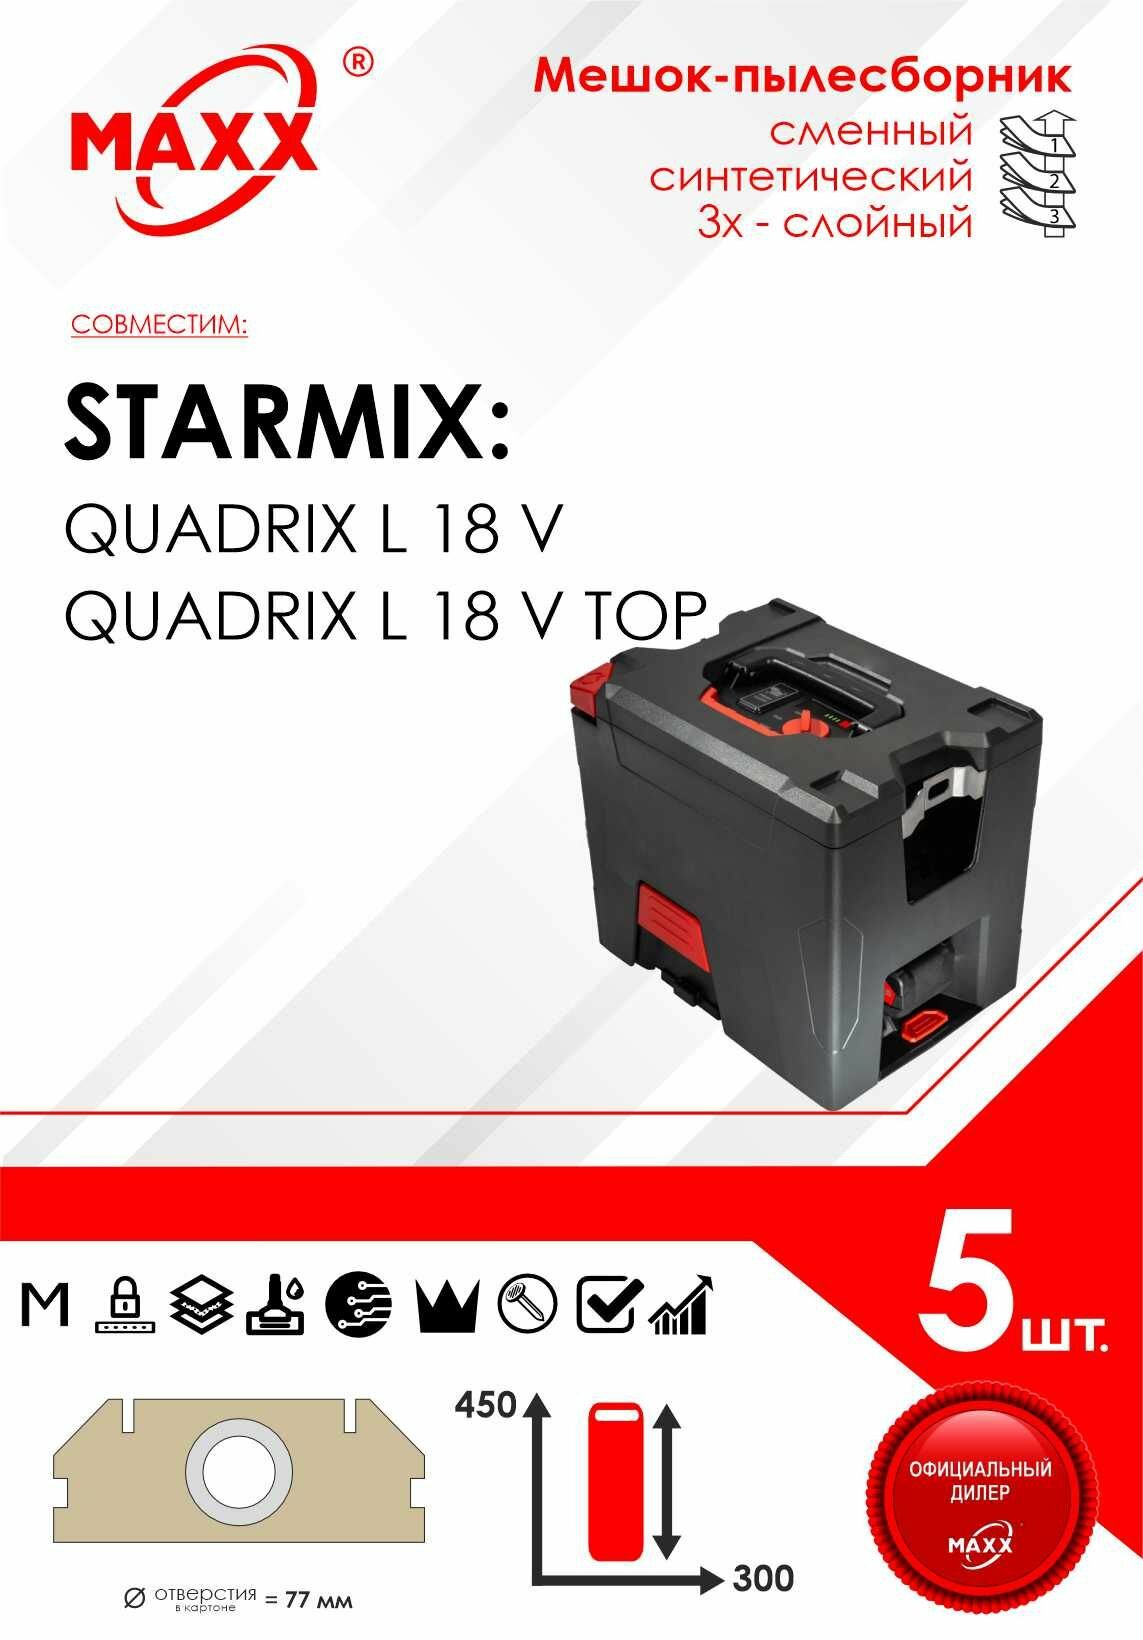 Мешок - пылесборник 5 шт. для пылесоса Starmix QUADRIX L 18 V / L 18 V TOP, 020280, FBV 7,5 448794, 102917